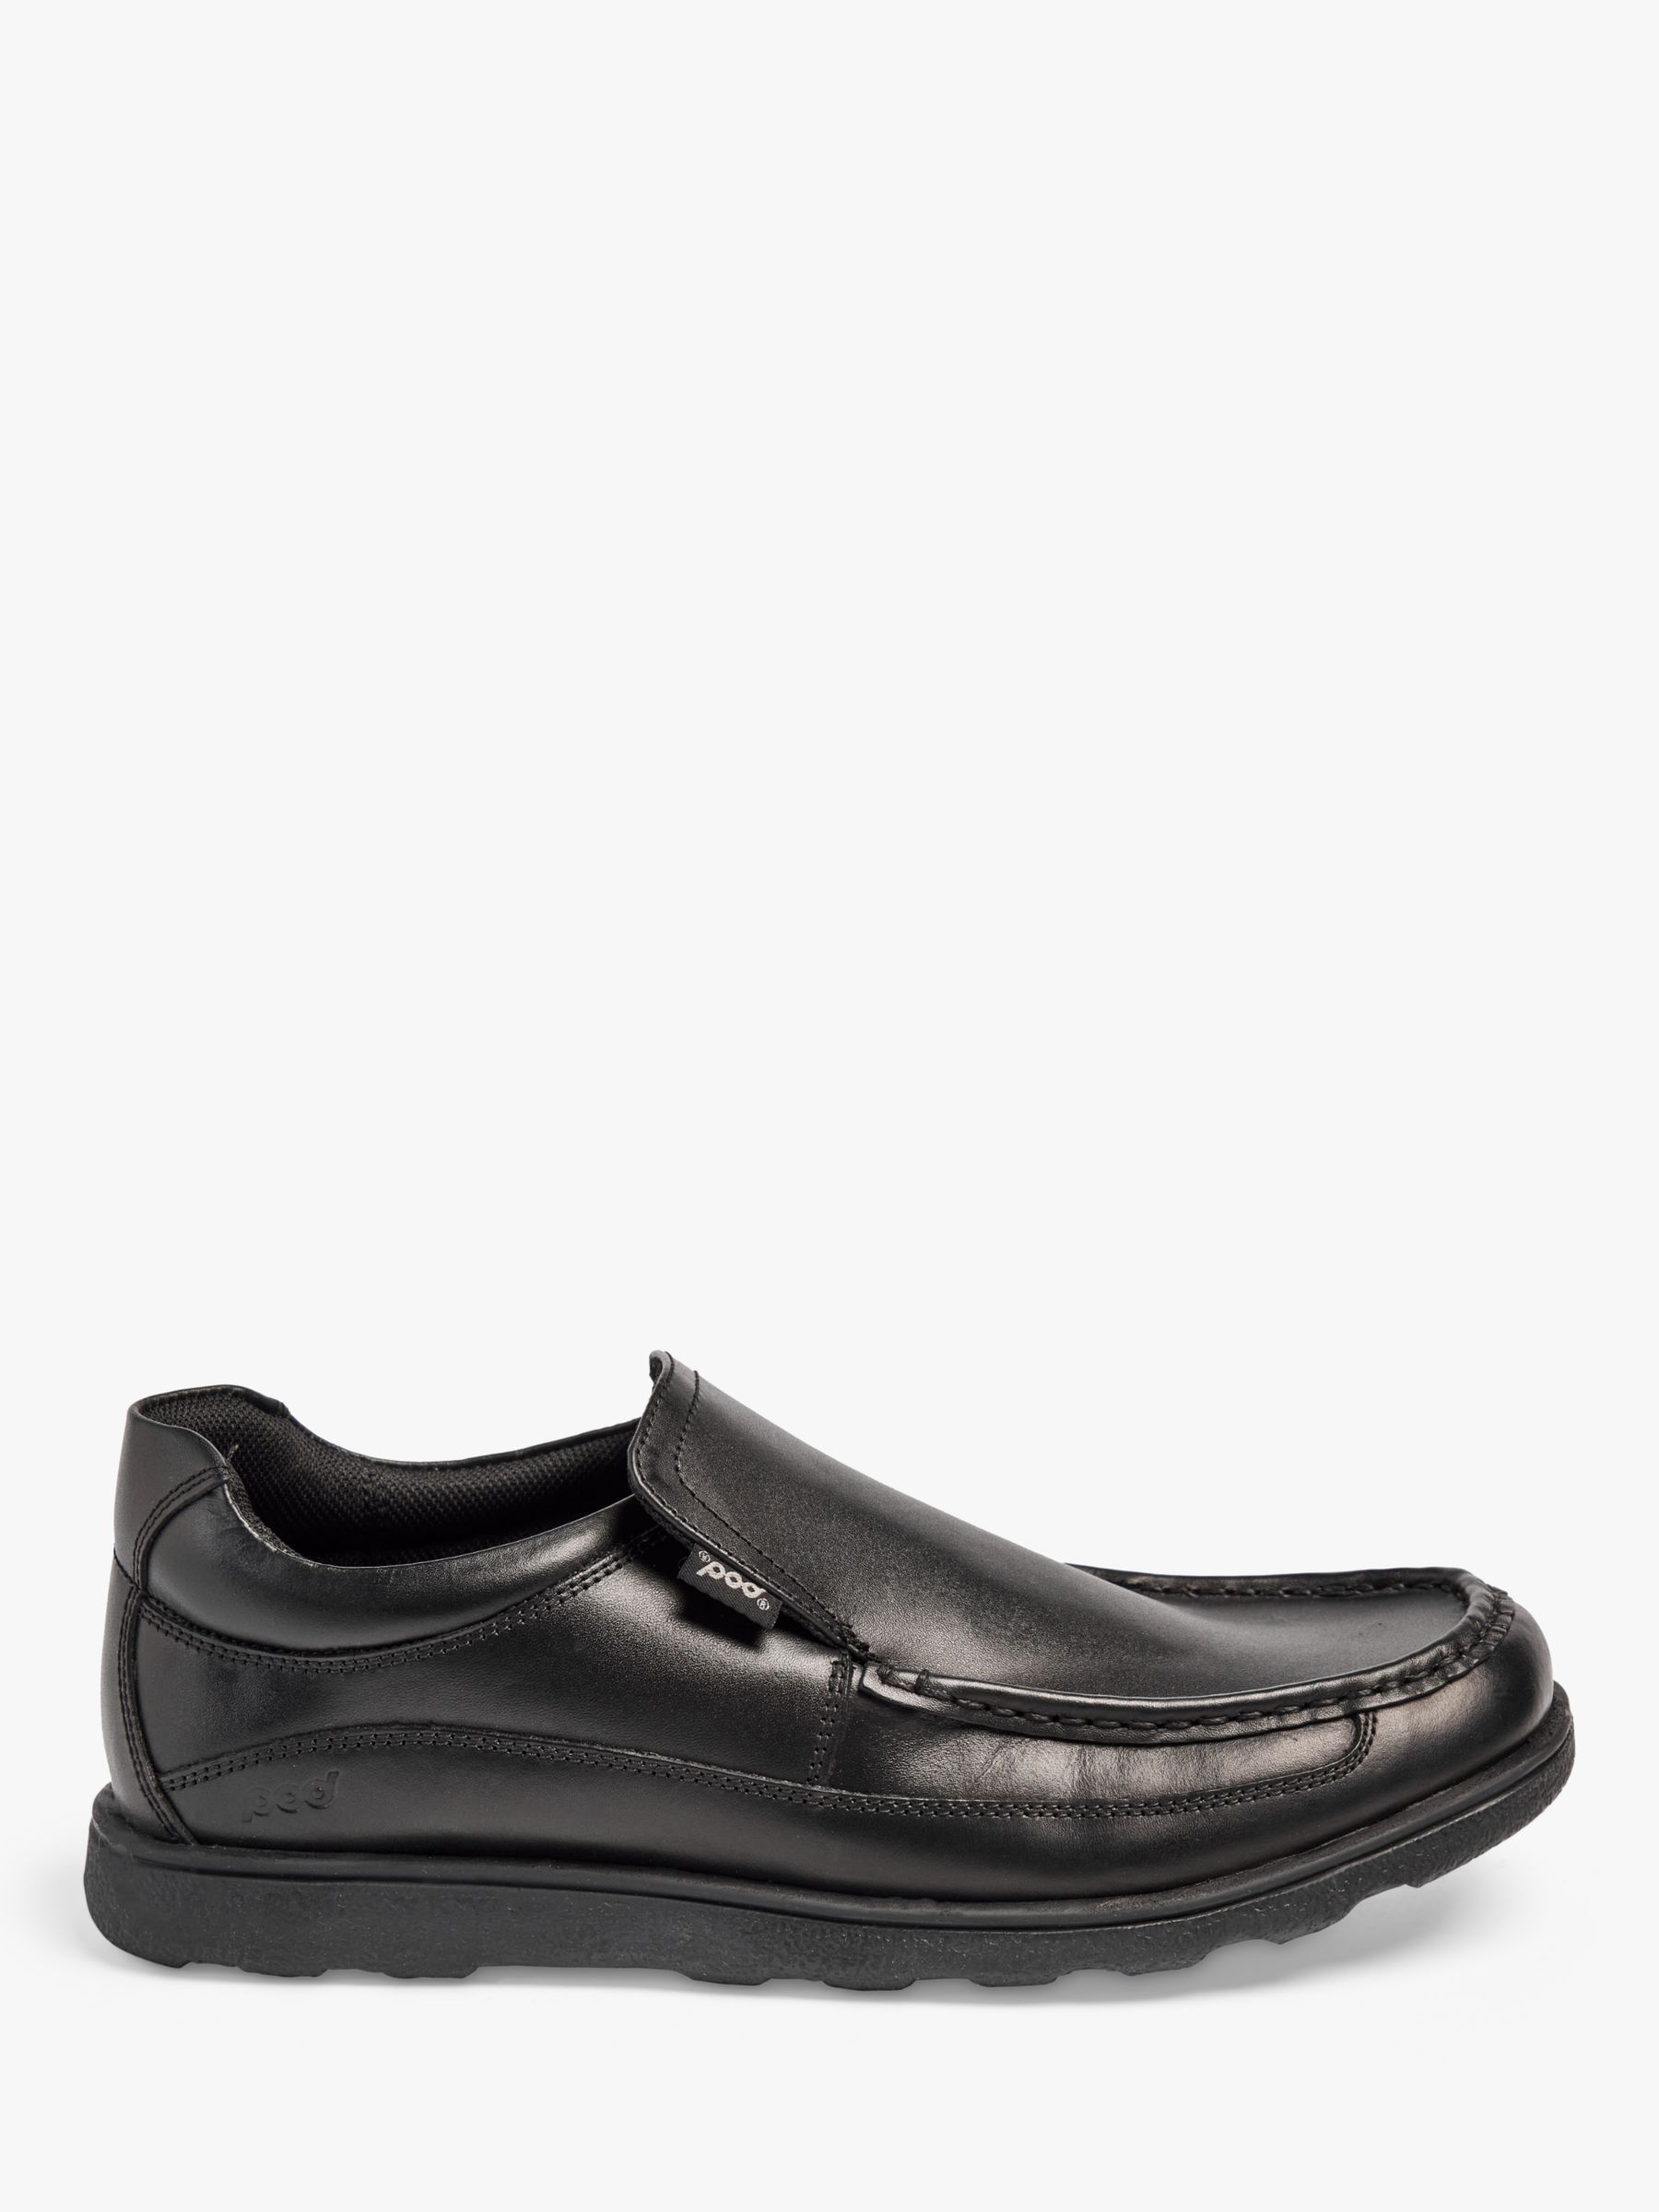 Pod Men's Leather Shoes, Black, 8